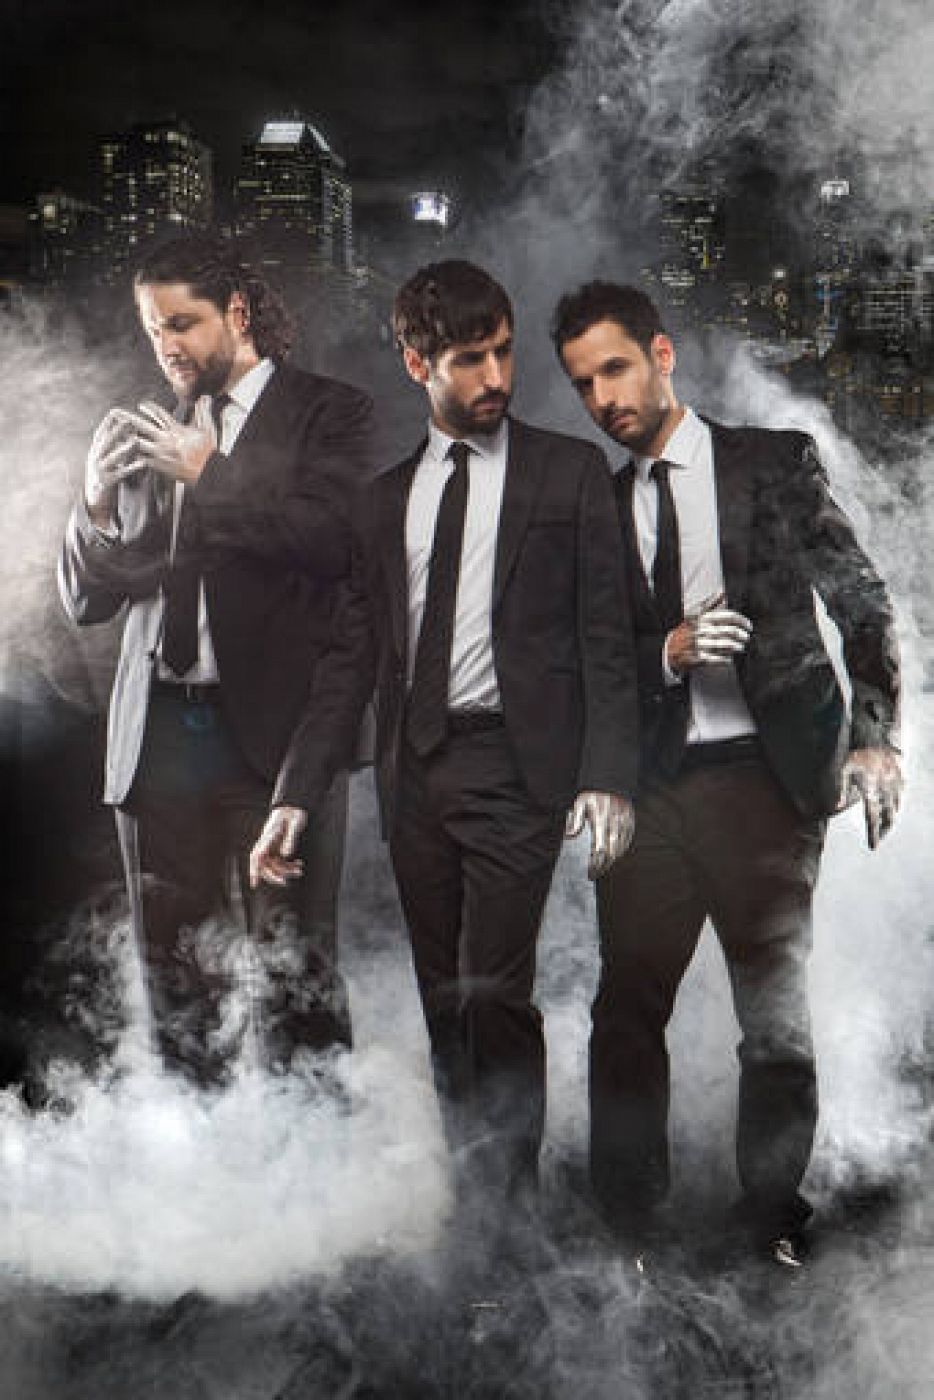   Los hermanos Aaron, Pablo y Daniel Zapico en una imagen muy promocional de su último disco.